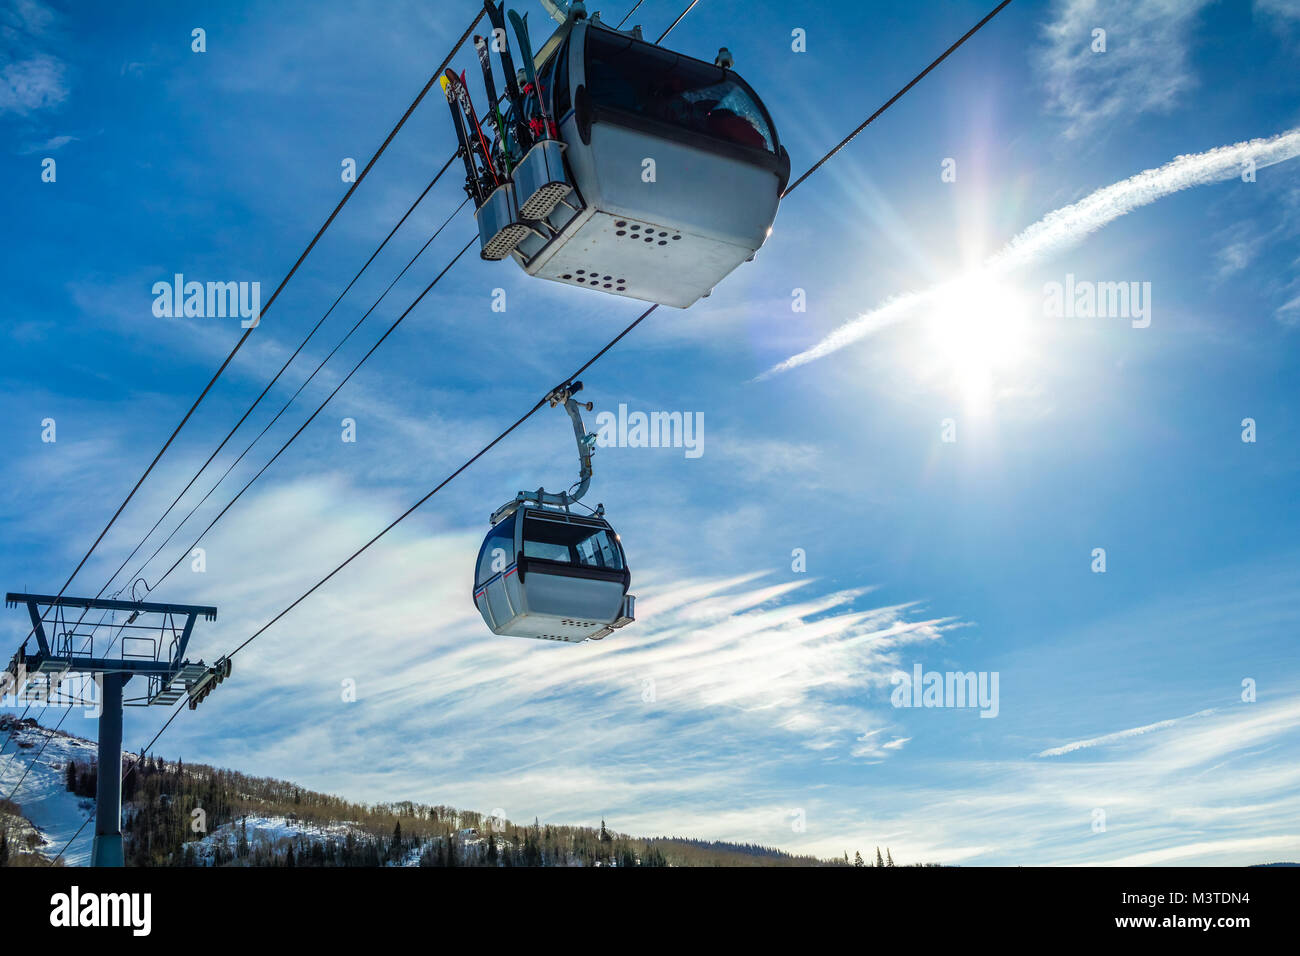 Dos cabinas de góndola de esquí contra el cielo azul, el sol brillante a la derecha Foto de stock